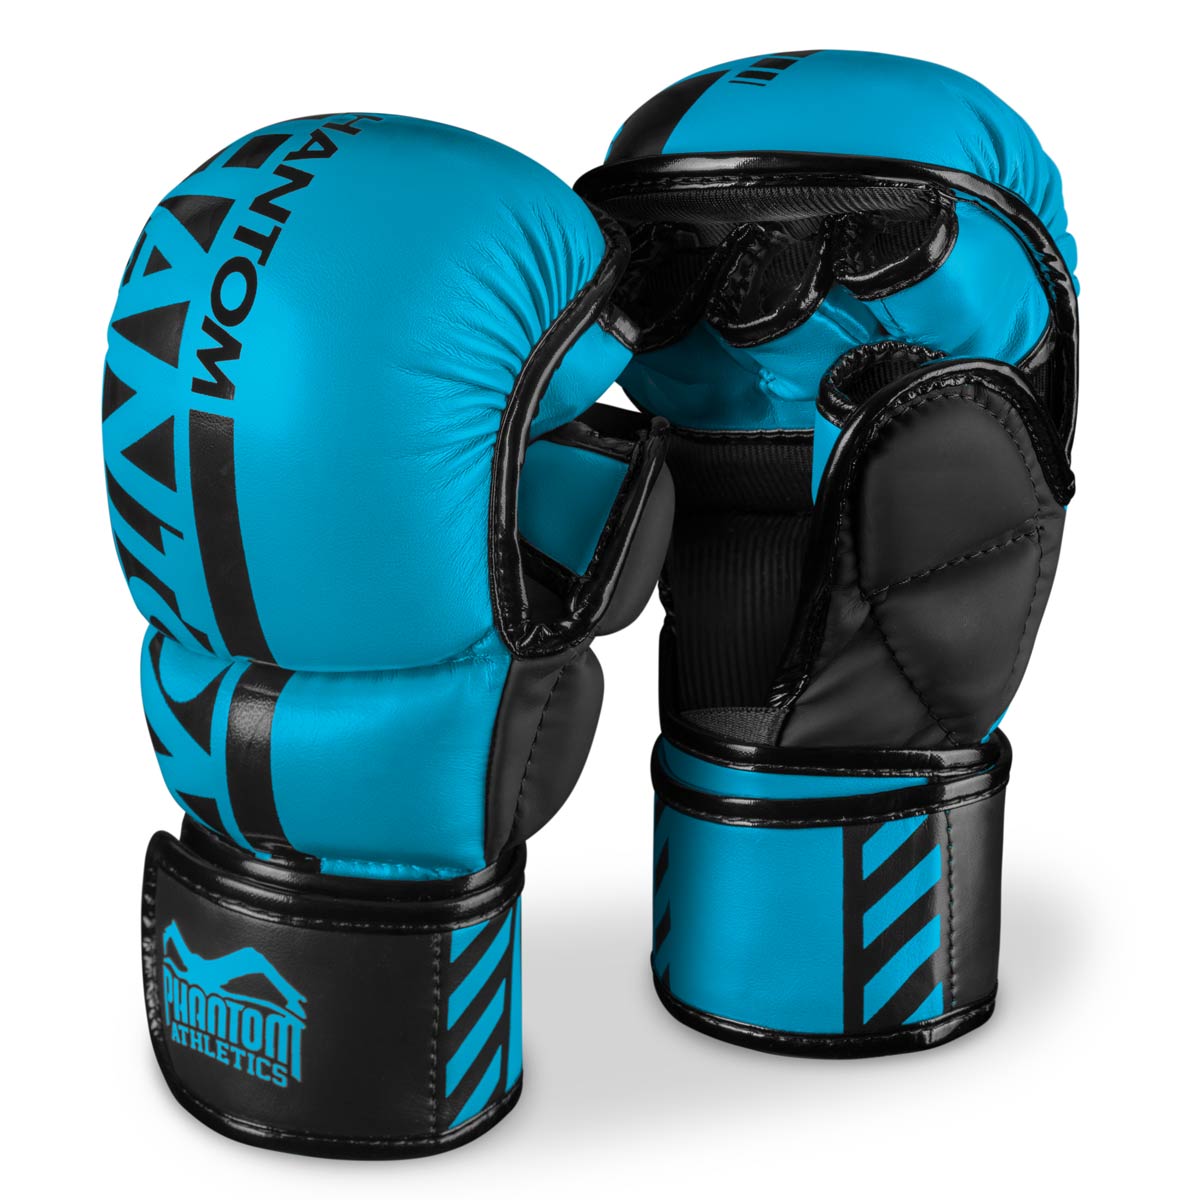 Phantom APEX NEON MMA Sparring Handschuhe. Hochwertige Boxhandschuhe für deinen Kampfsport. Perfekte Verarbeitung machen diese MMA Gloves ideal für Training, Sparring und Wettkampf. Perfekt für MMA Krav Maga oder Muay Thai. Hier in Neon Blau.